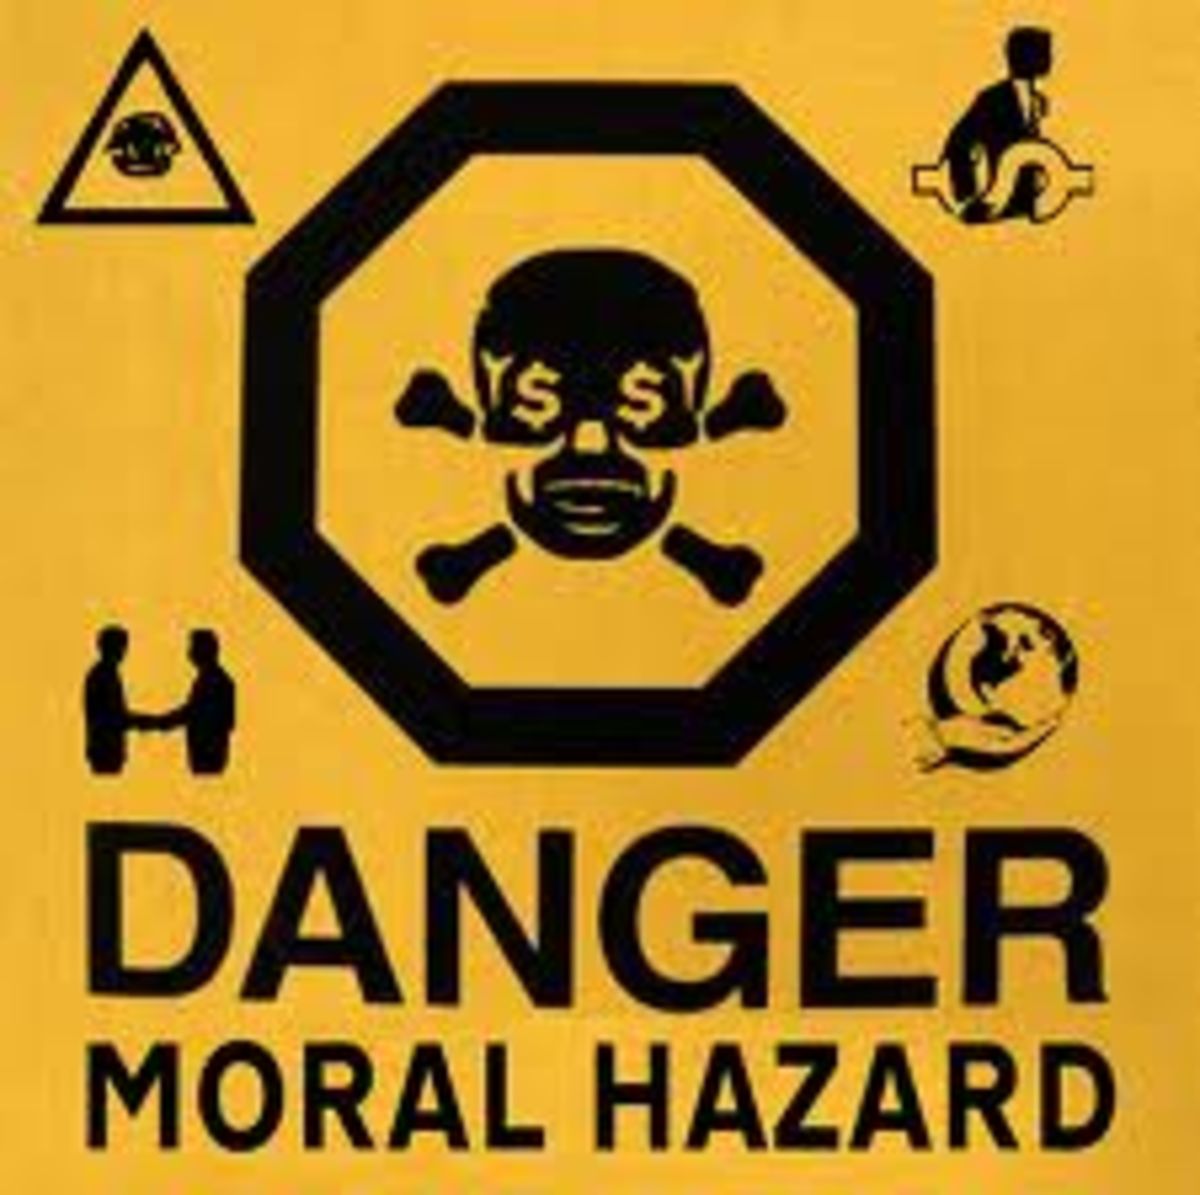 Moral Hazard là một hành vi nguy hiểm